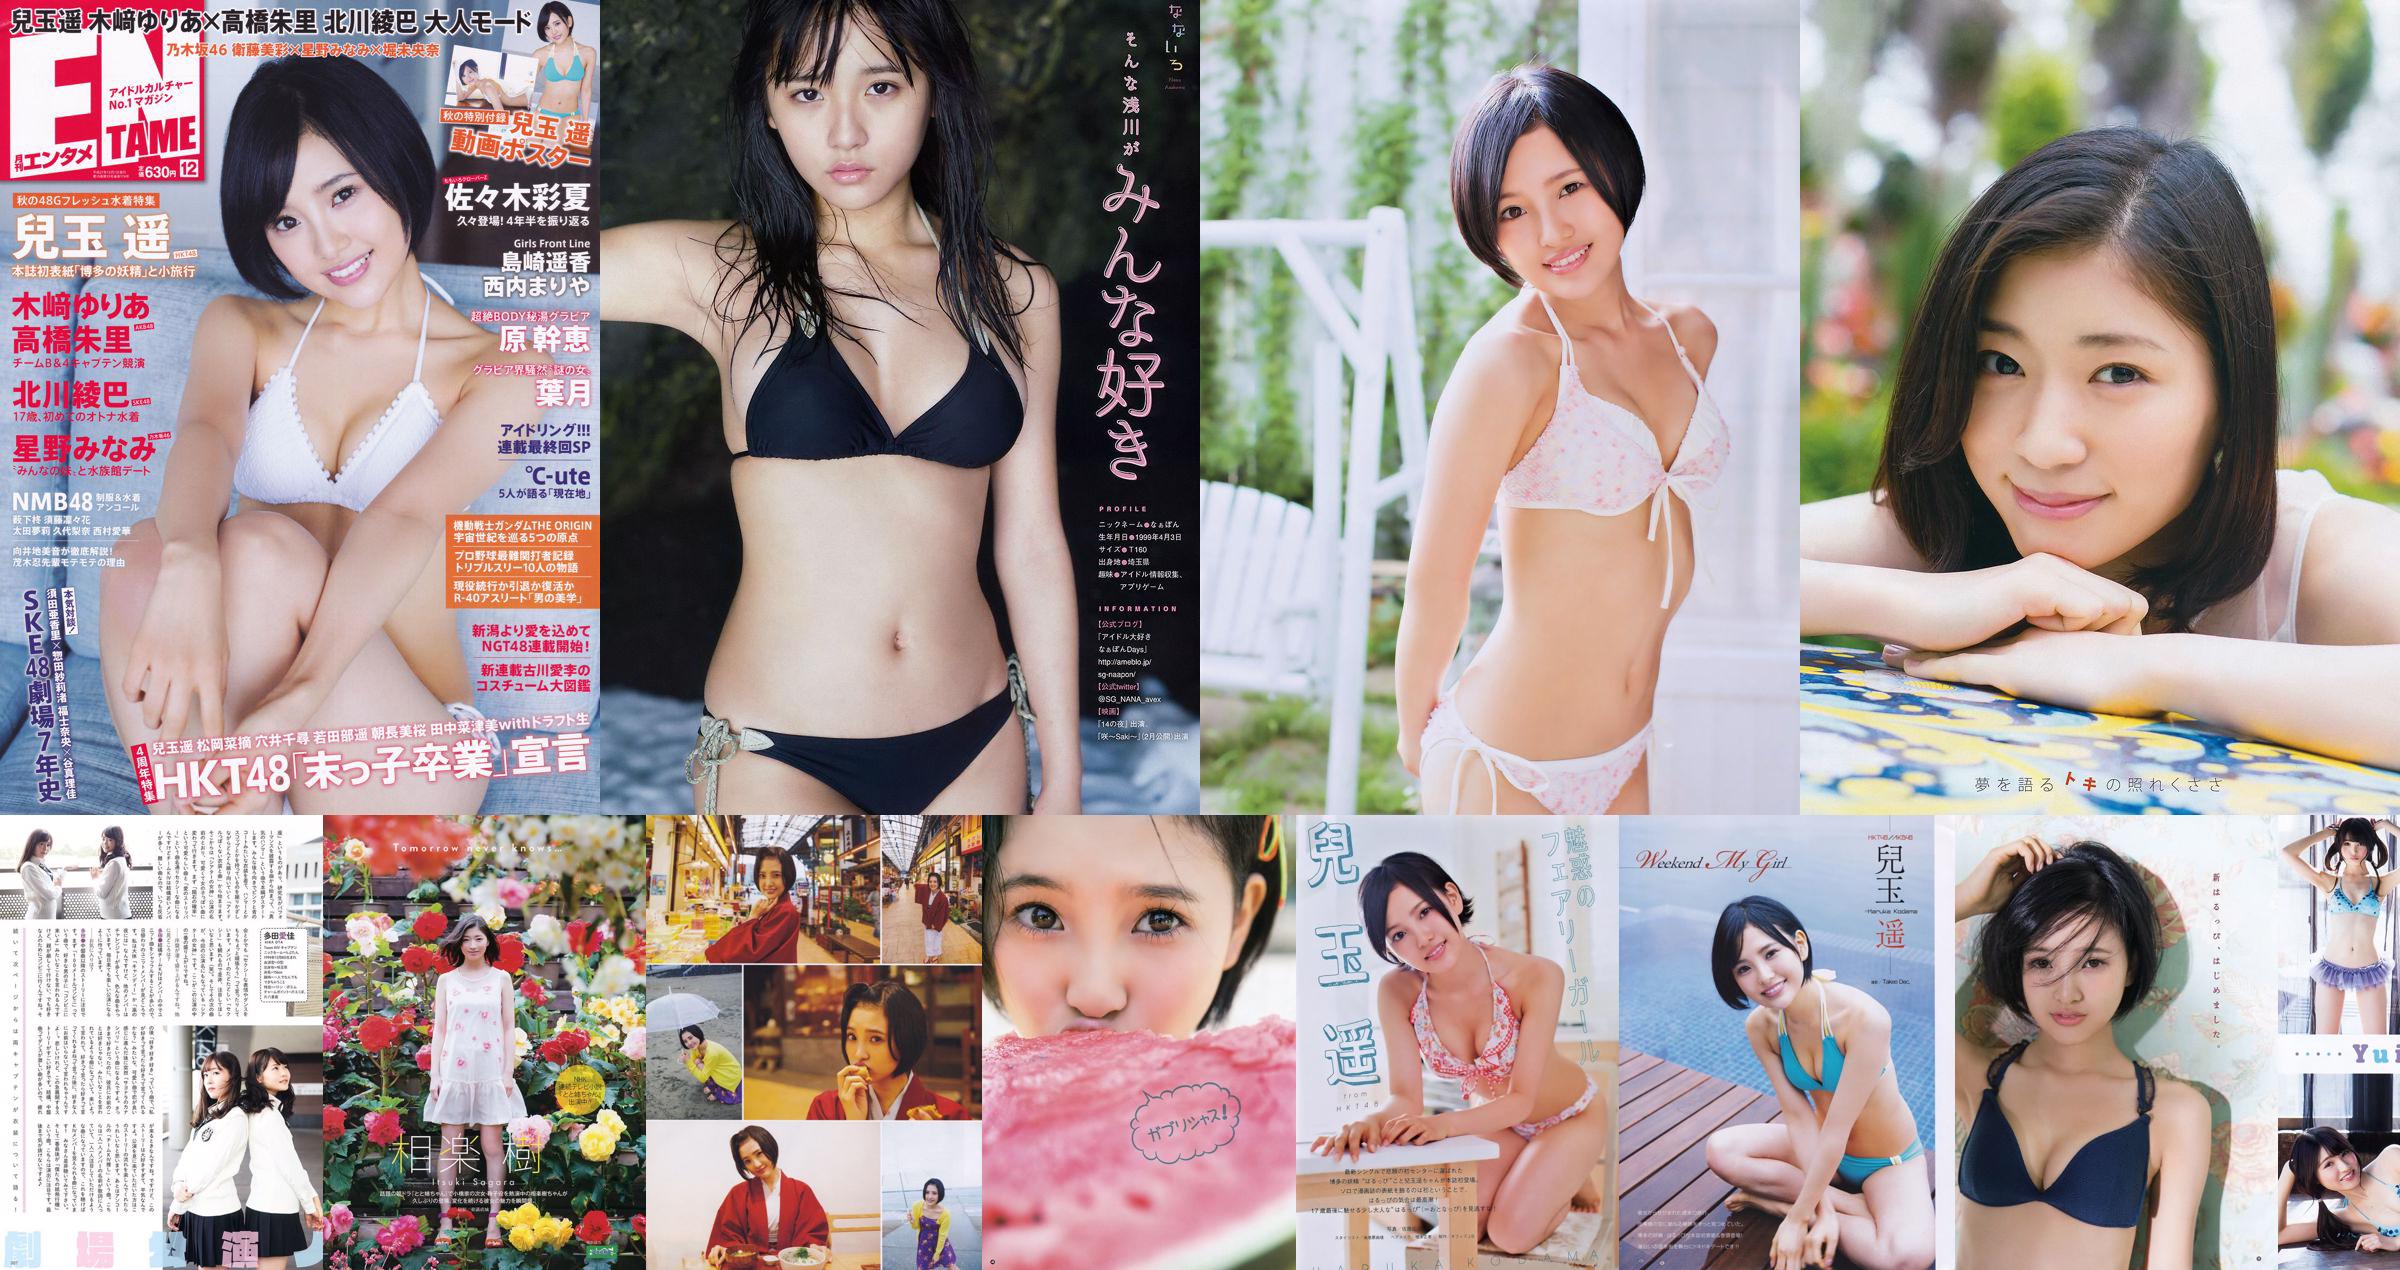 [Young Gangan] Haruka Kodama Itsuki Sagara 2016 No.11 Photo Magazine No.1ca5c9 Page 3